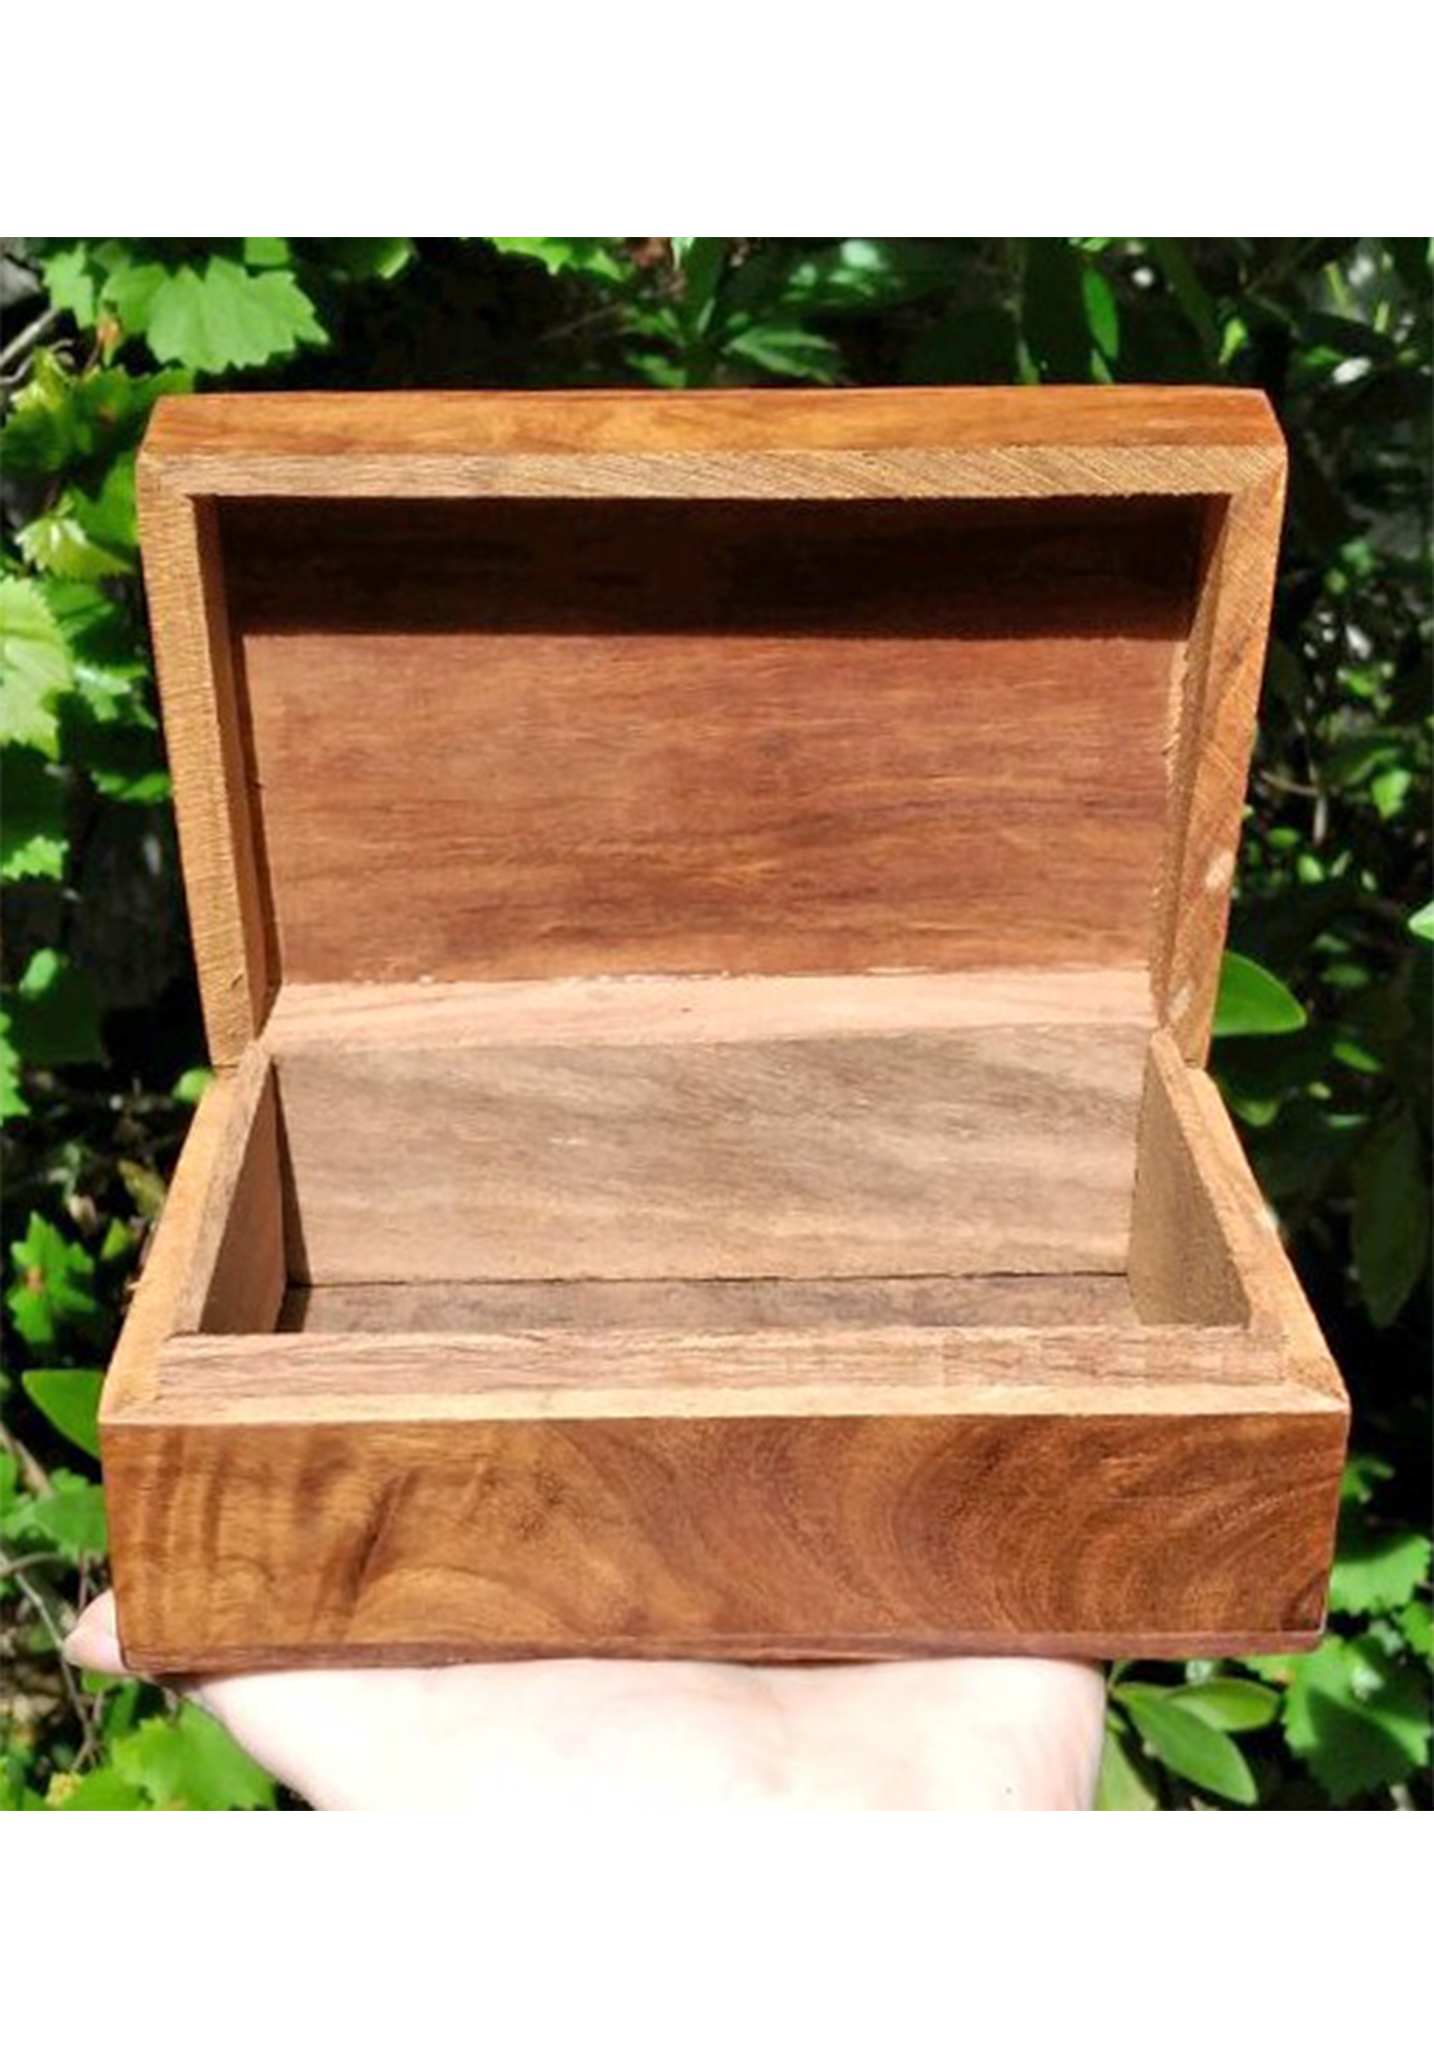 Sacred Feminine Goddess Aspect Wooden Storage Chest Box Open